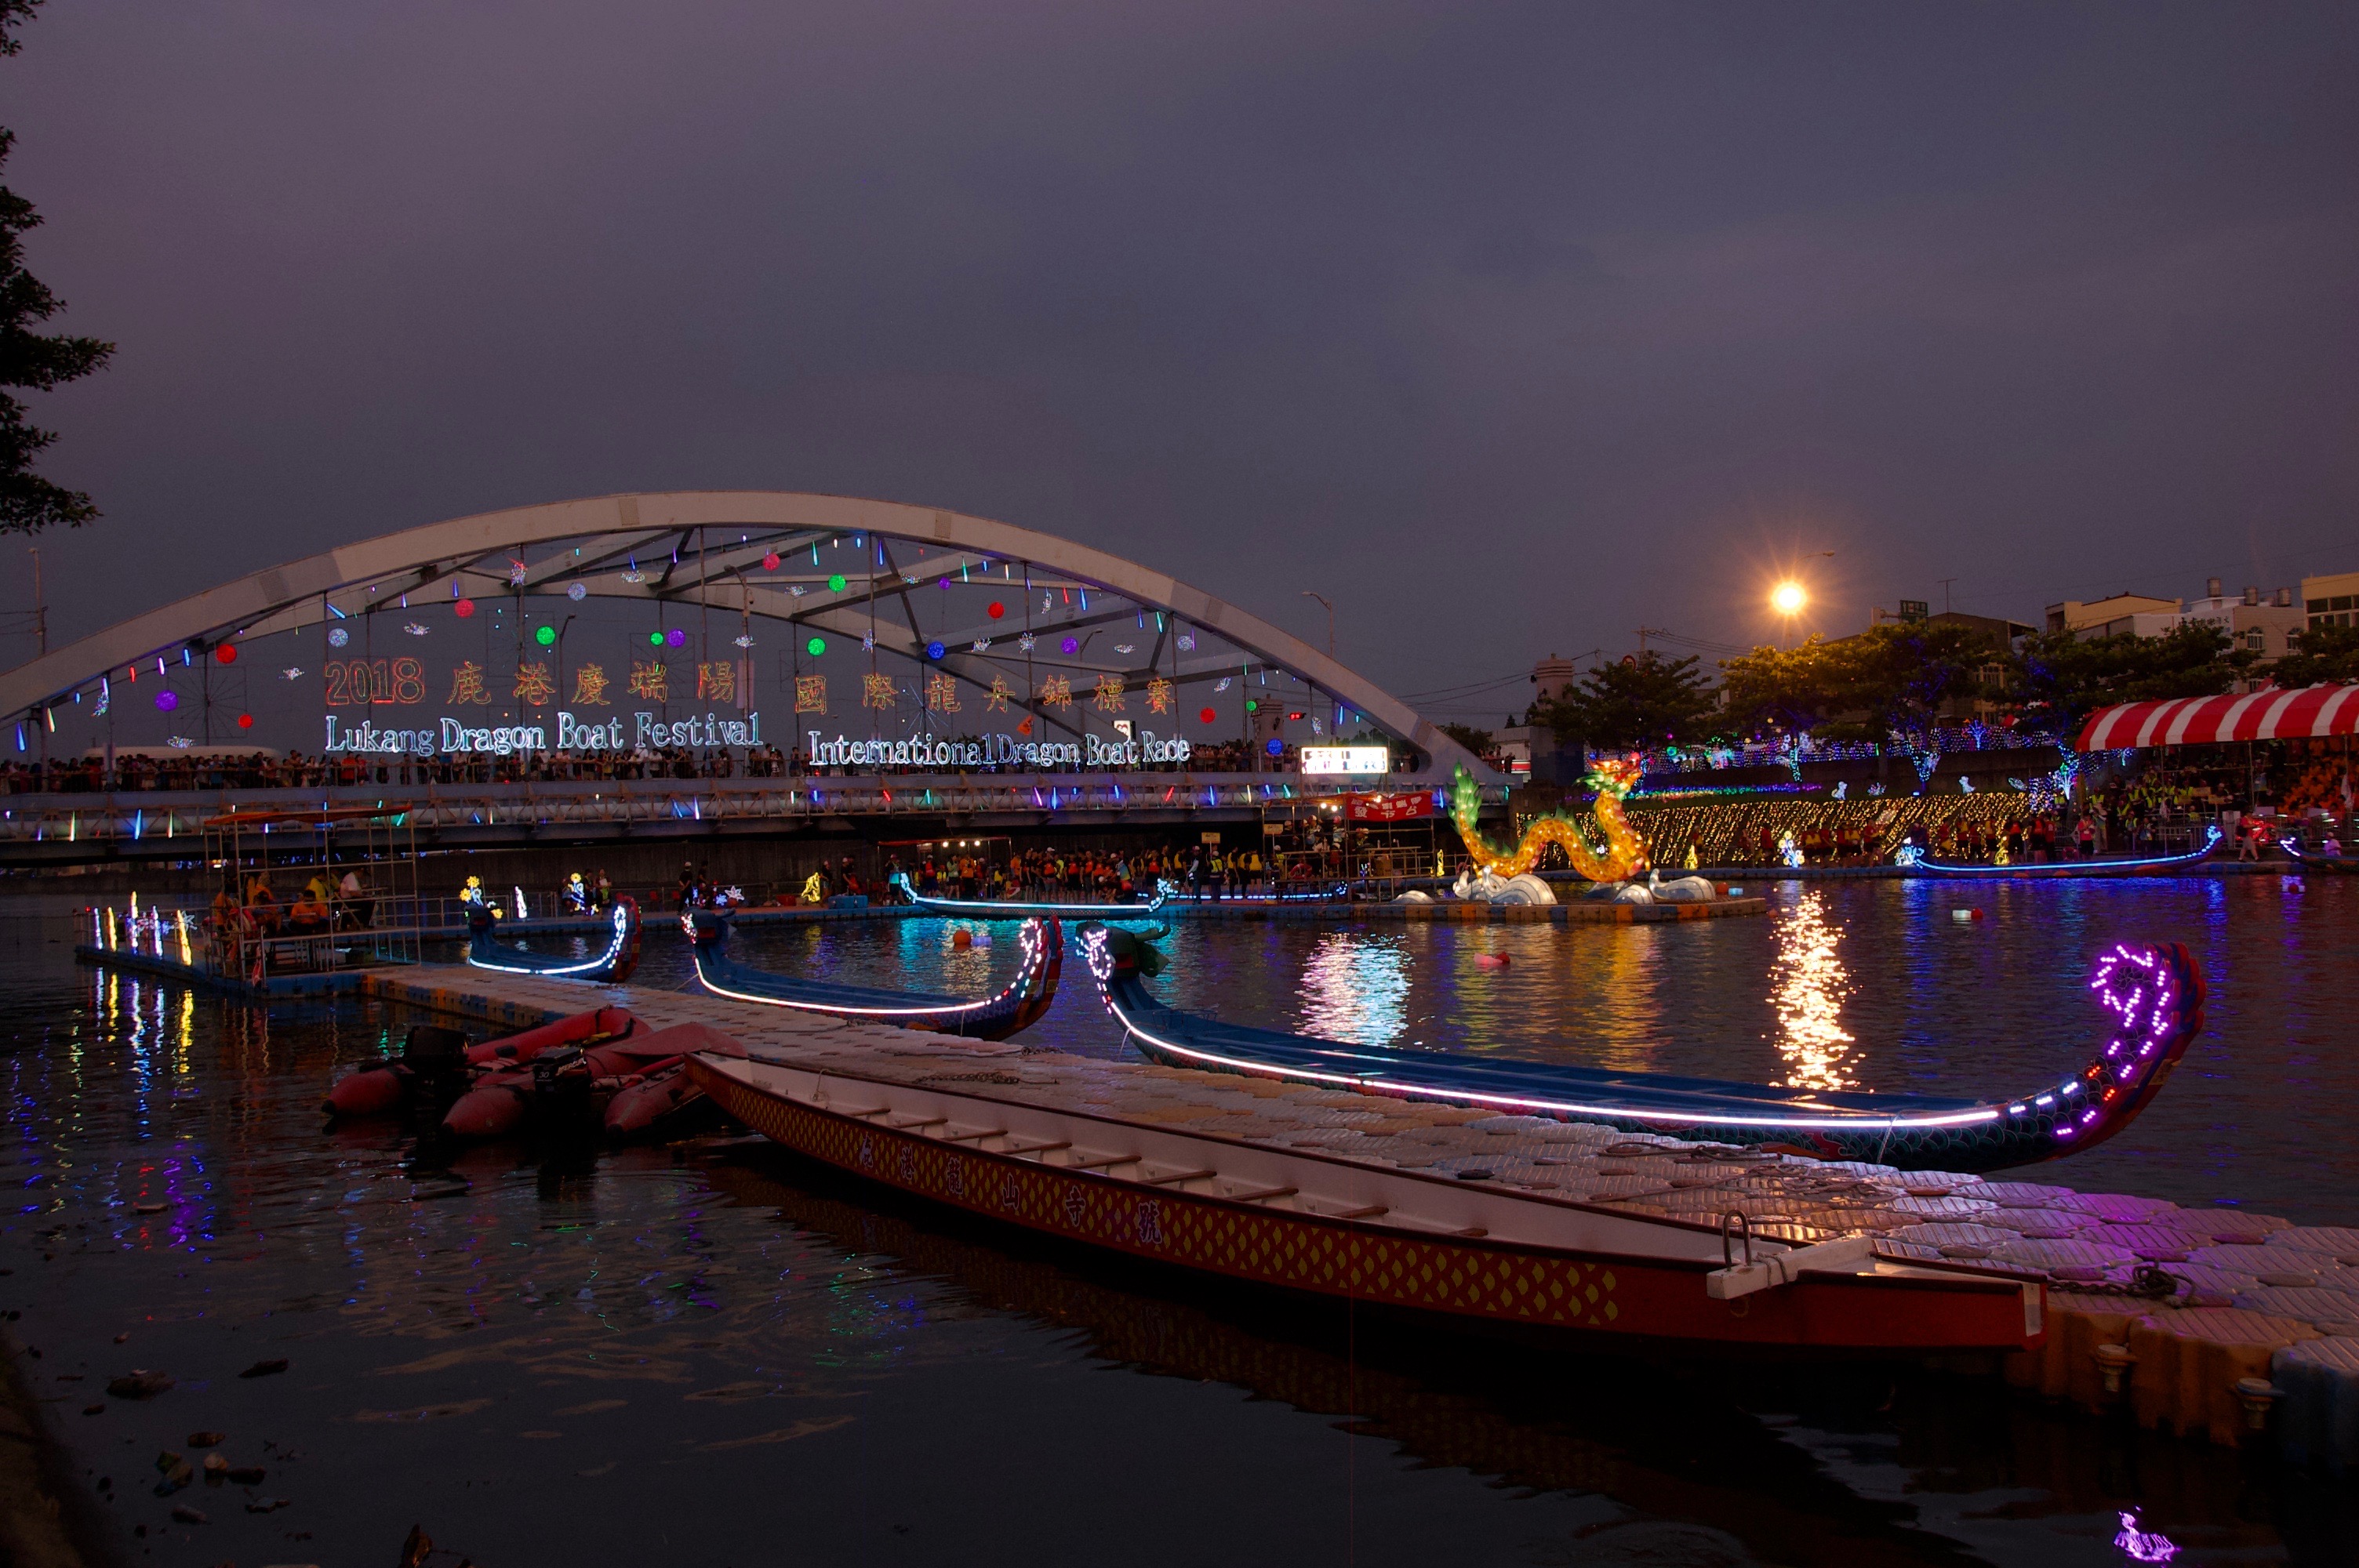 LuKang-Dragon-Boat-Festival2-China